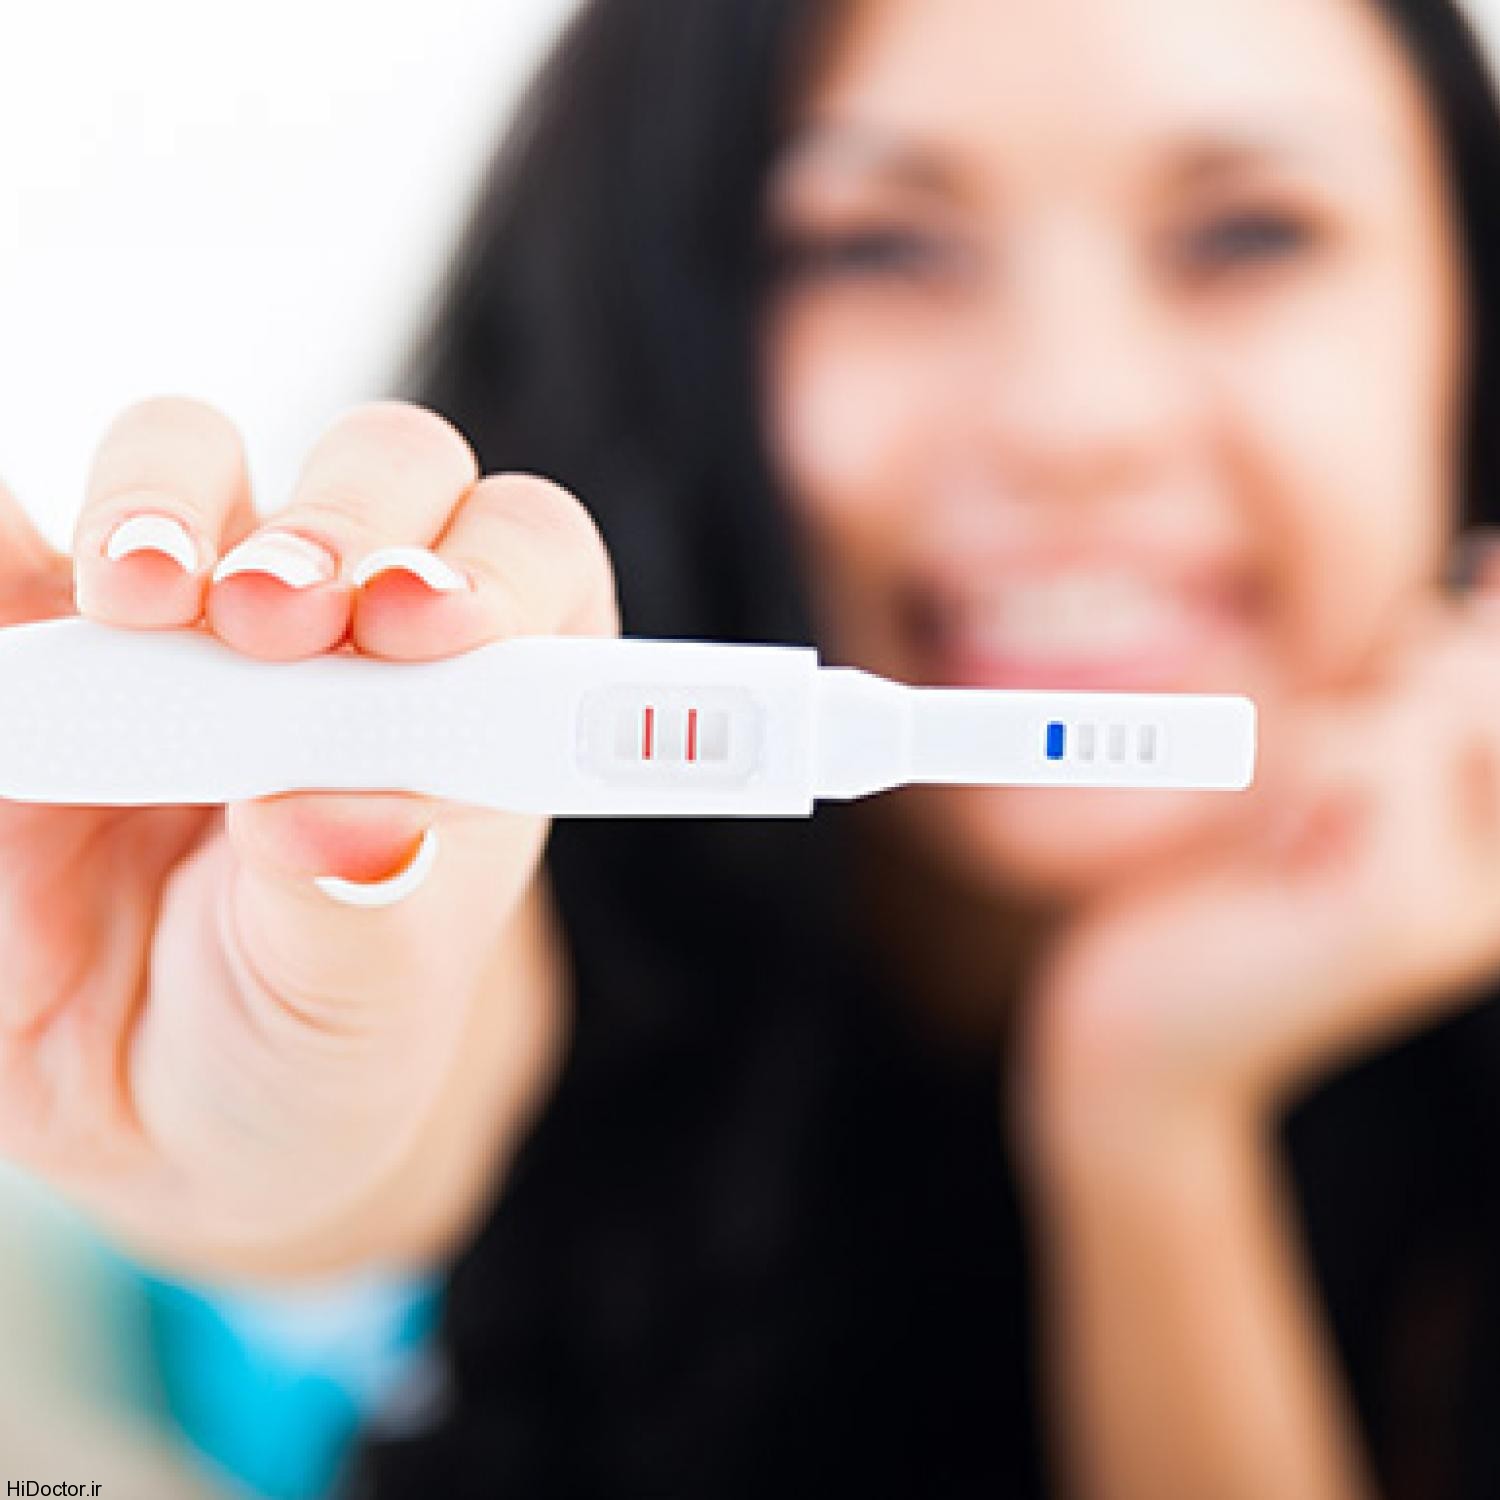 بالا بردن شانس بارداری چگونه ممکن است؟ تخمک تا چند روز قدرت باروری دارد؟